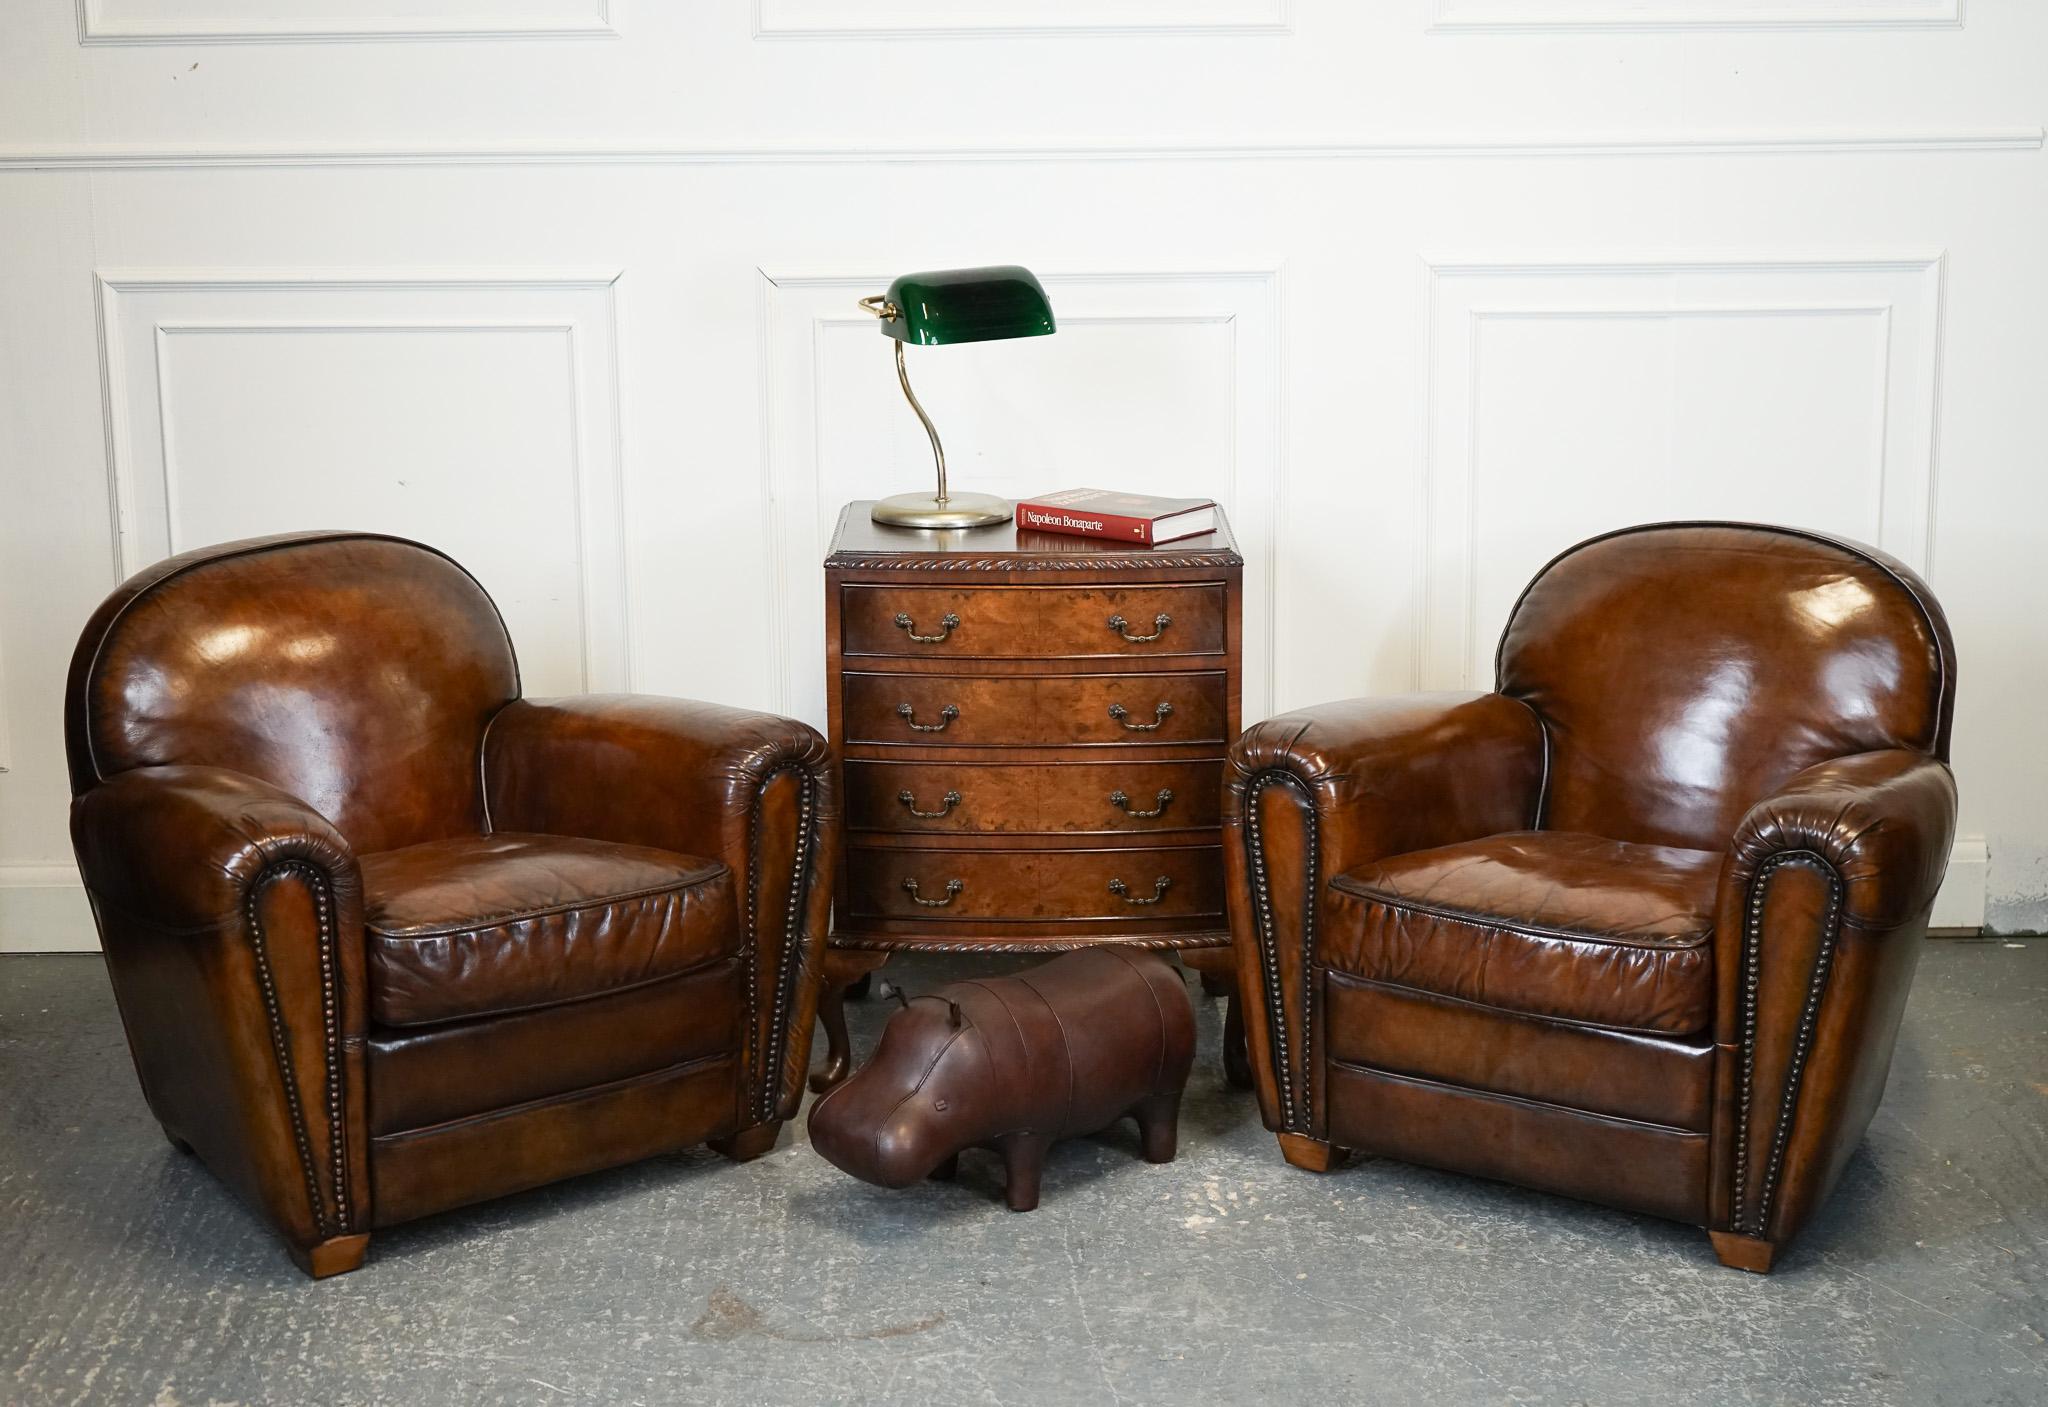 Antiquités de Londres

Nous sommes ravis d'offrir à la vente cette superbe paire de chaises teintes à la main de style art déco.

Cette paire de fauteuils club de style Art déco a subi un processus méticuleux de teinture à la main, selon la